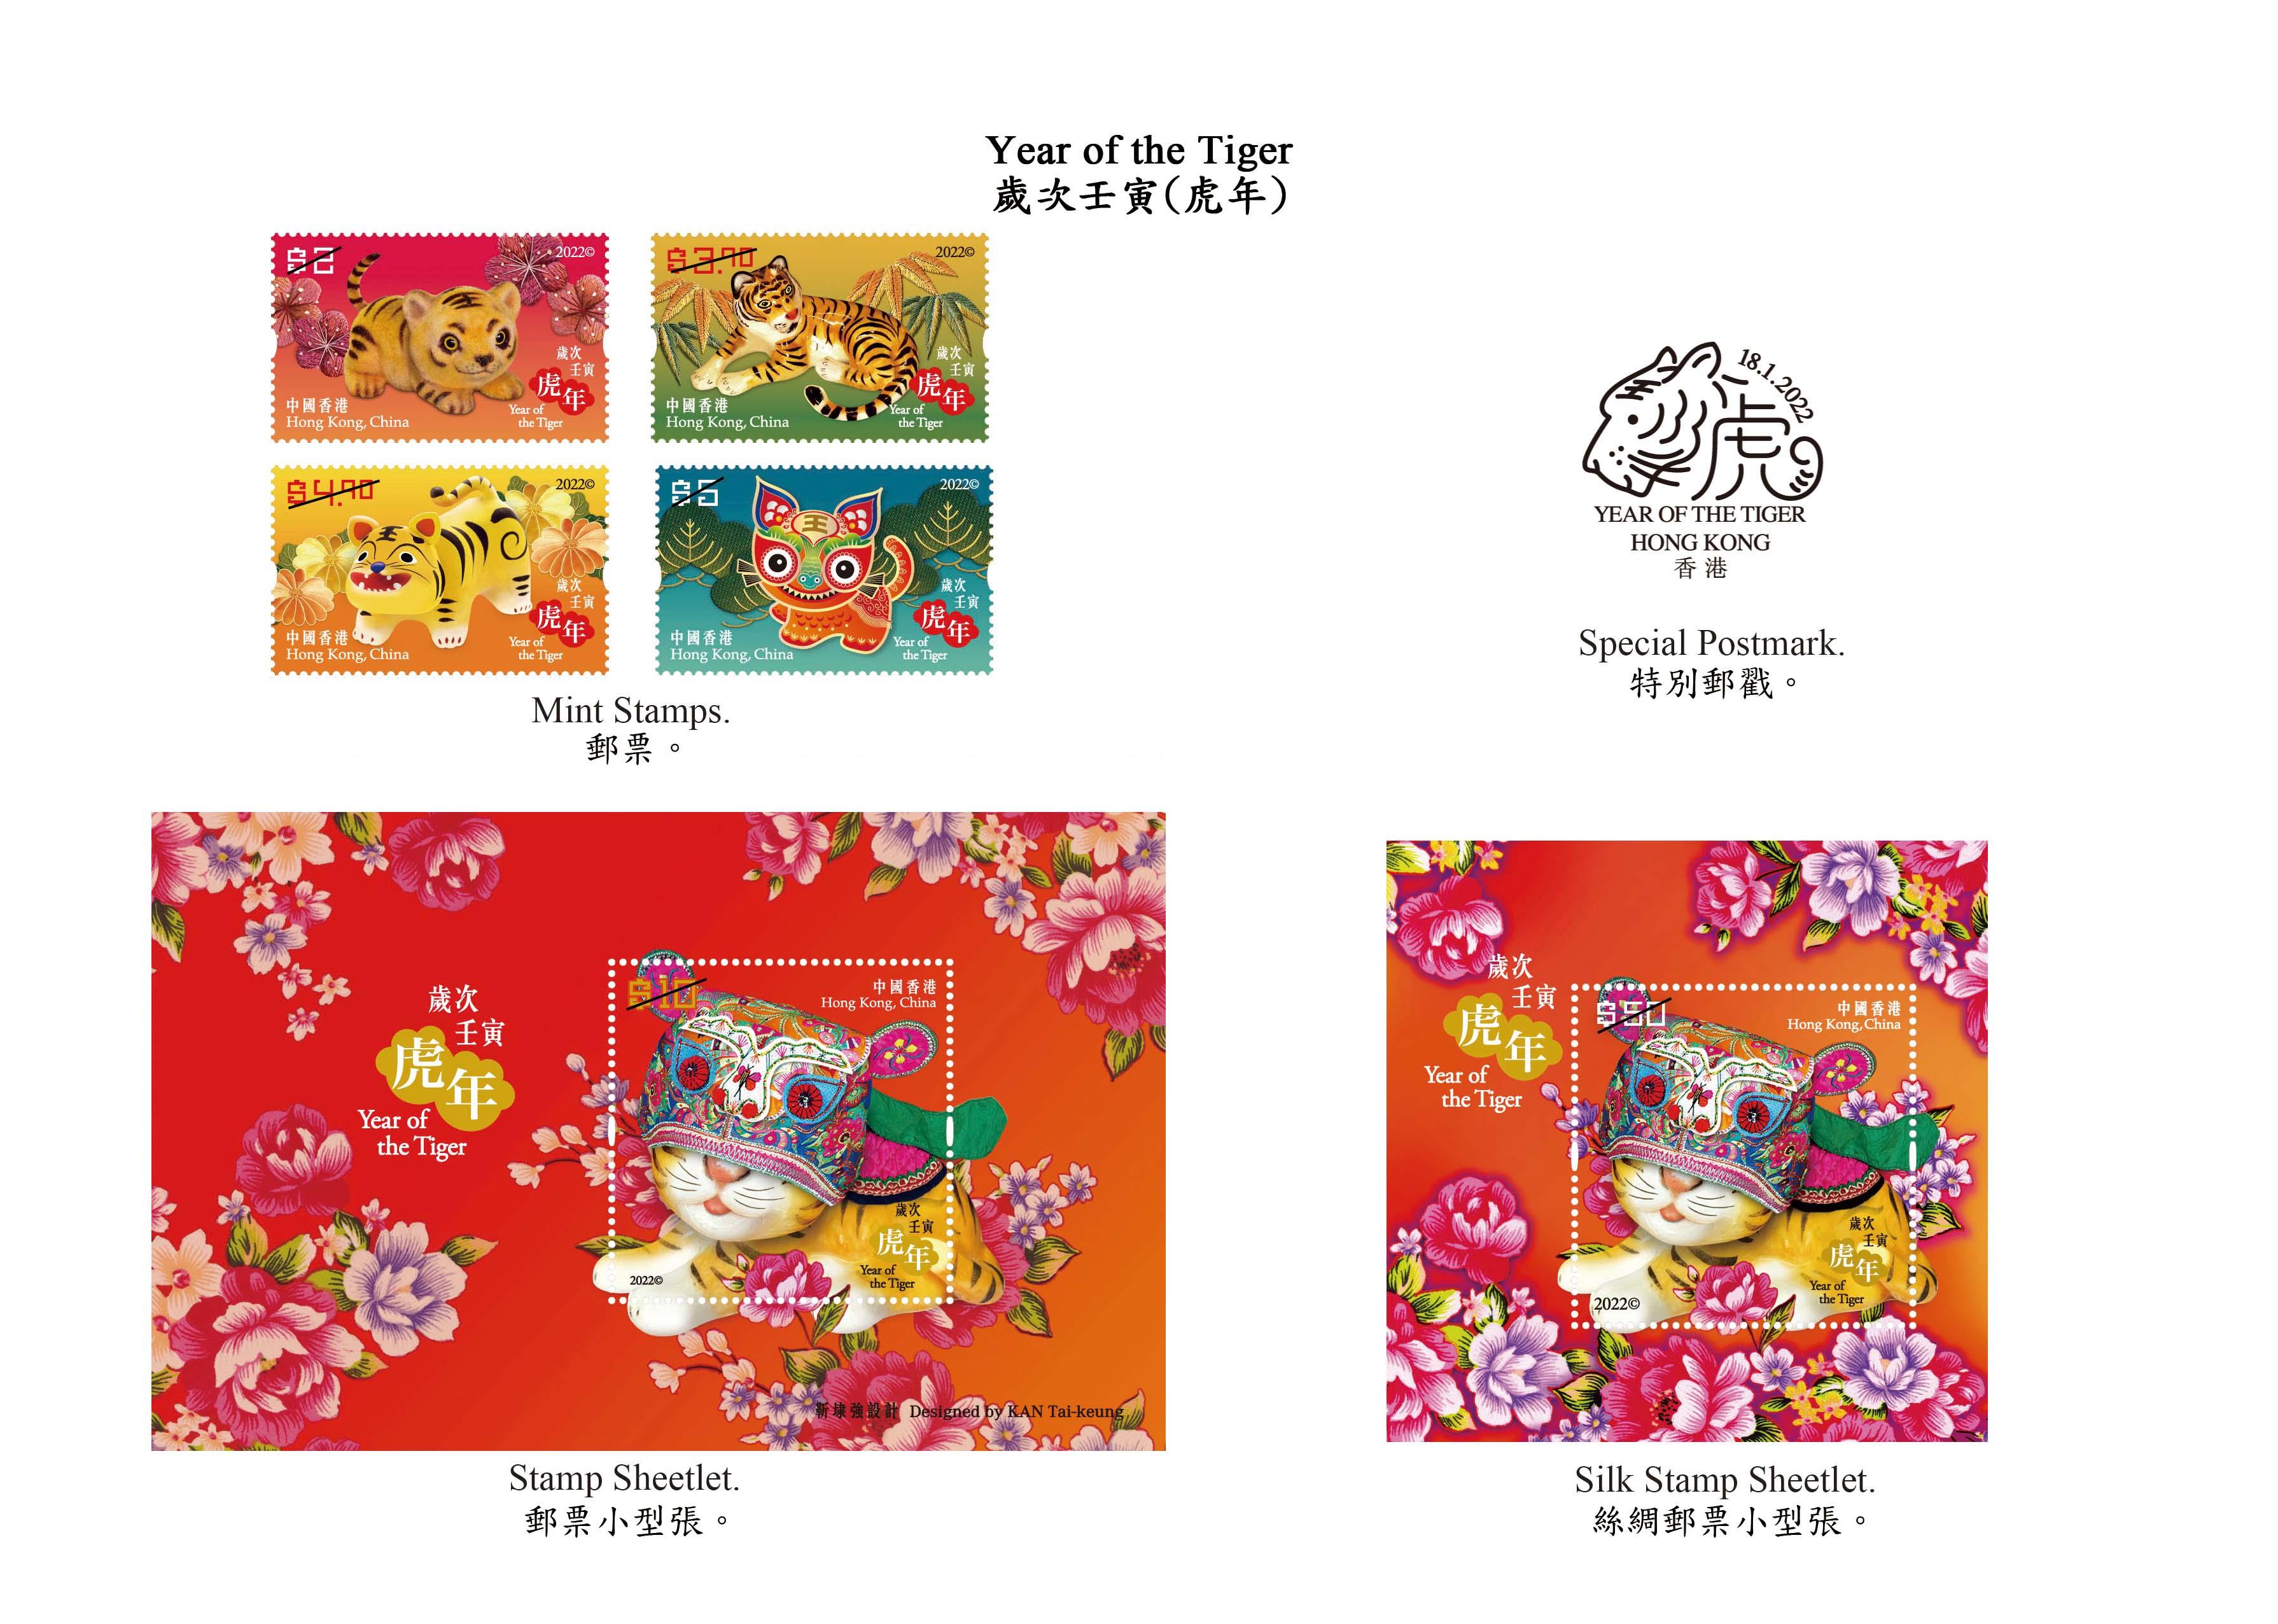 香港郵政一月十八日（星期二）發行以「歲次壬寅（虎年）」為題的特別郵票及相關集郵品。圖示郵票、郵票小型張和特別郵戳。